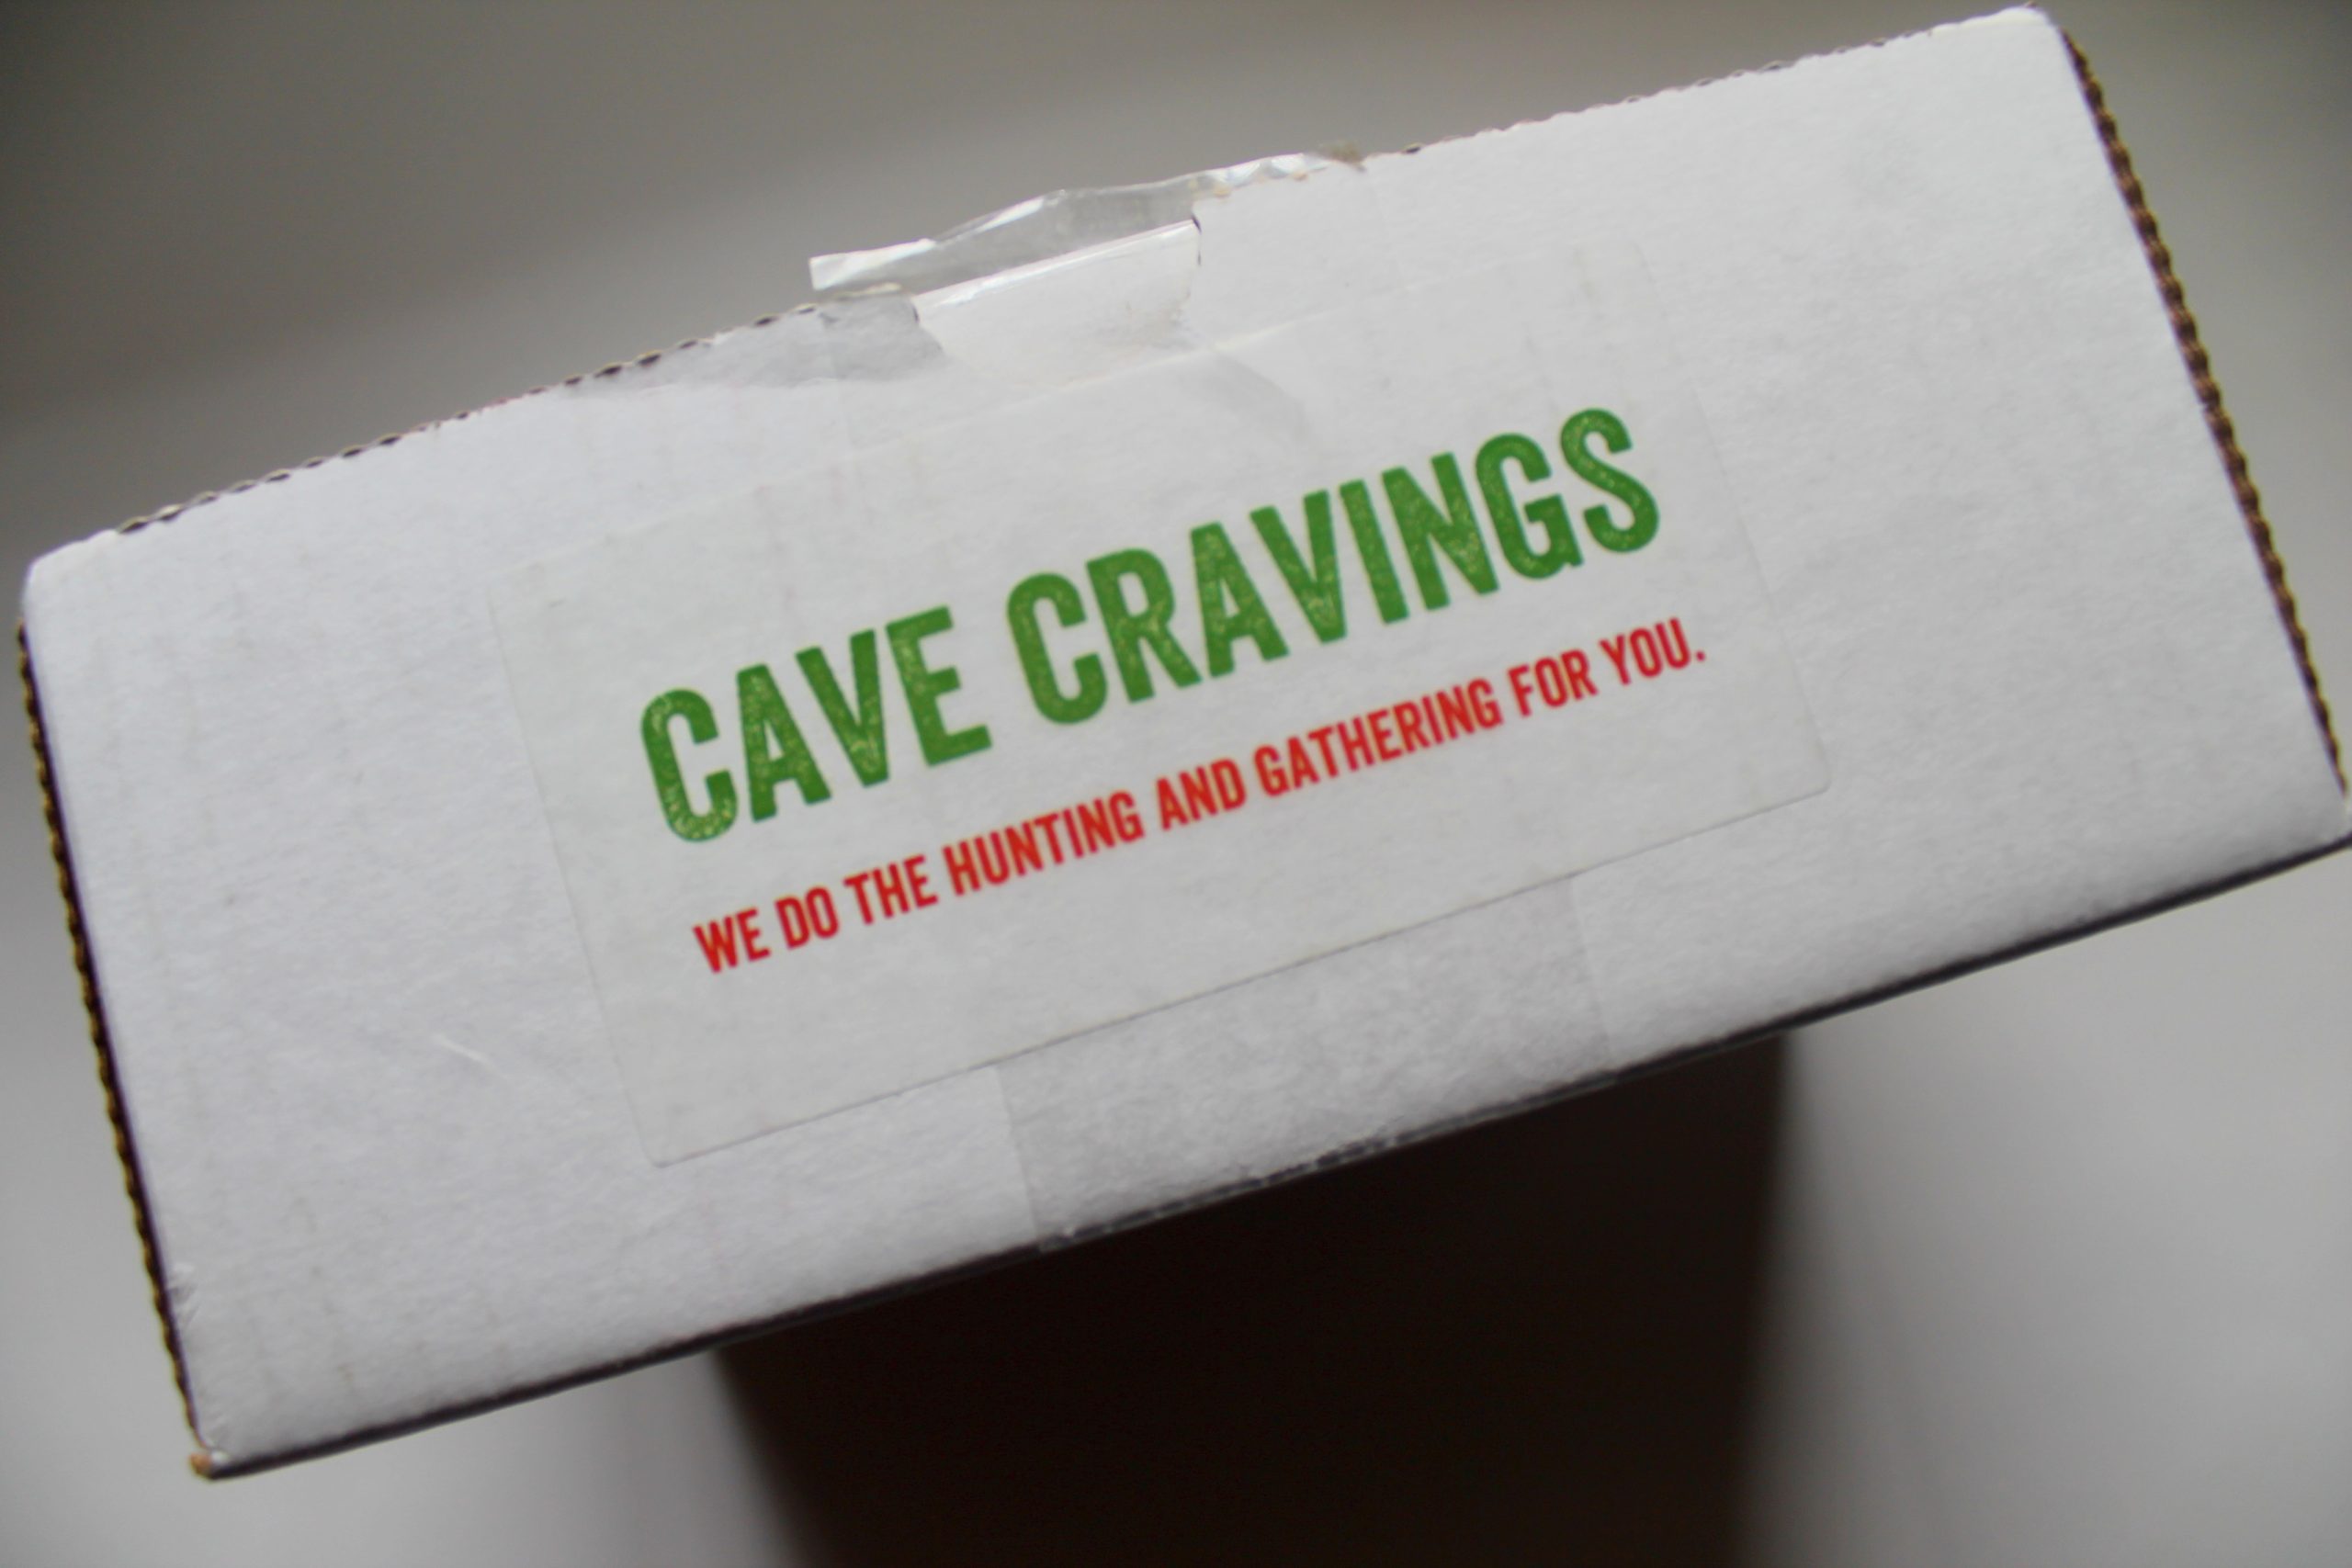 cavecravings